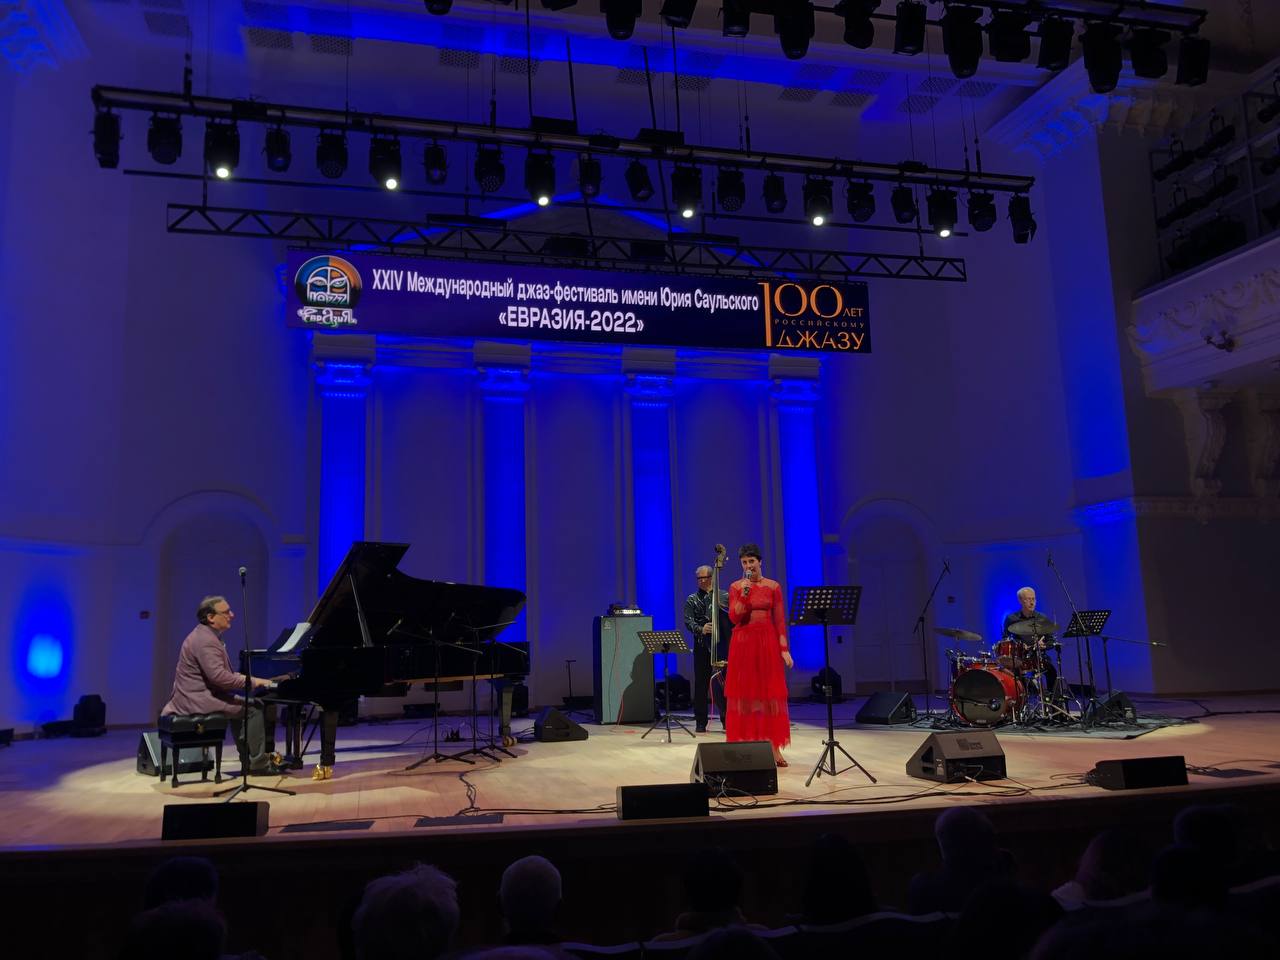 Преподаватель и студенты регентского отделения ОренДС посетили XXIV Международный джаз — фестиваль имени Юрия Саульского «Евразия — 2022»